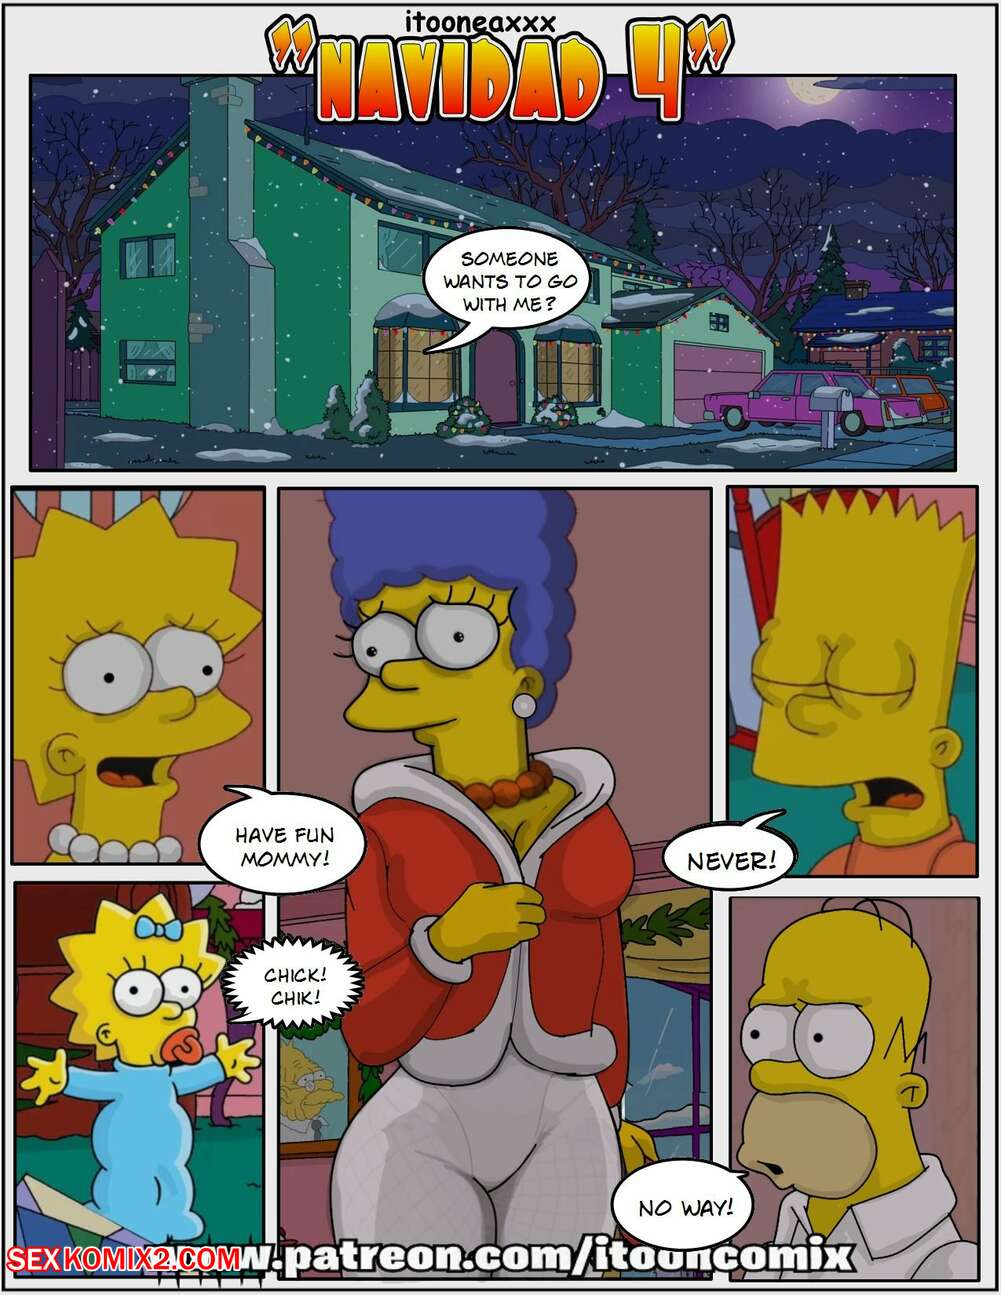 1001px x 1295px - âœ…ï¸ Porn comic Simpsons Comics. Navidad 4. IToonEAXXX. Sex comic MILF Marge  loves | Porn comics in English for adults only | sexkomix2.com